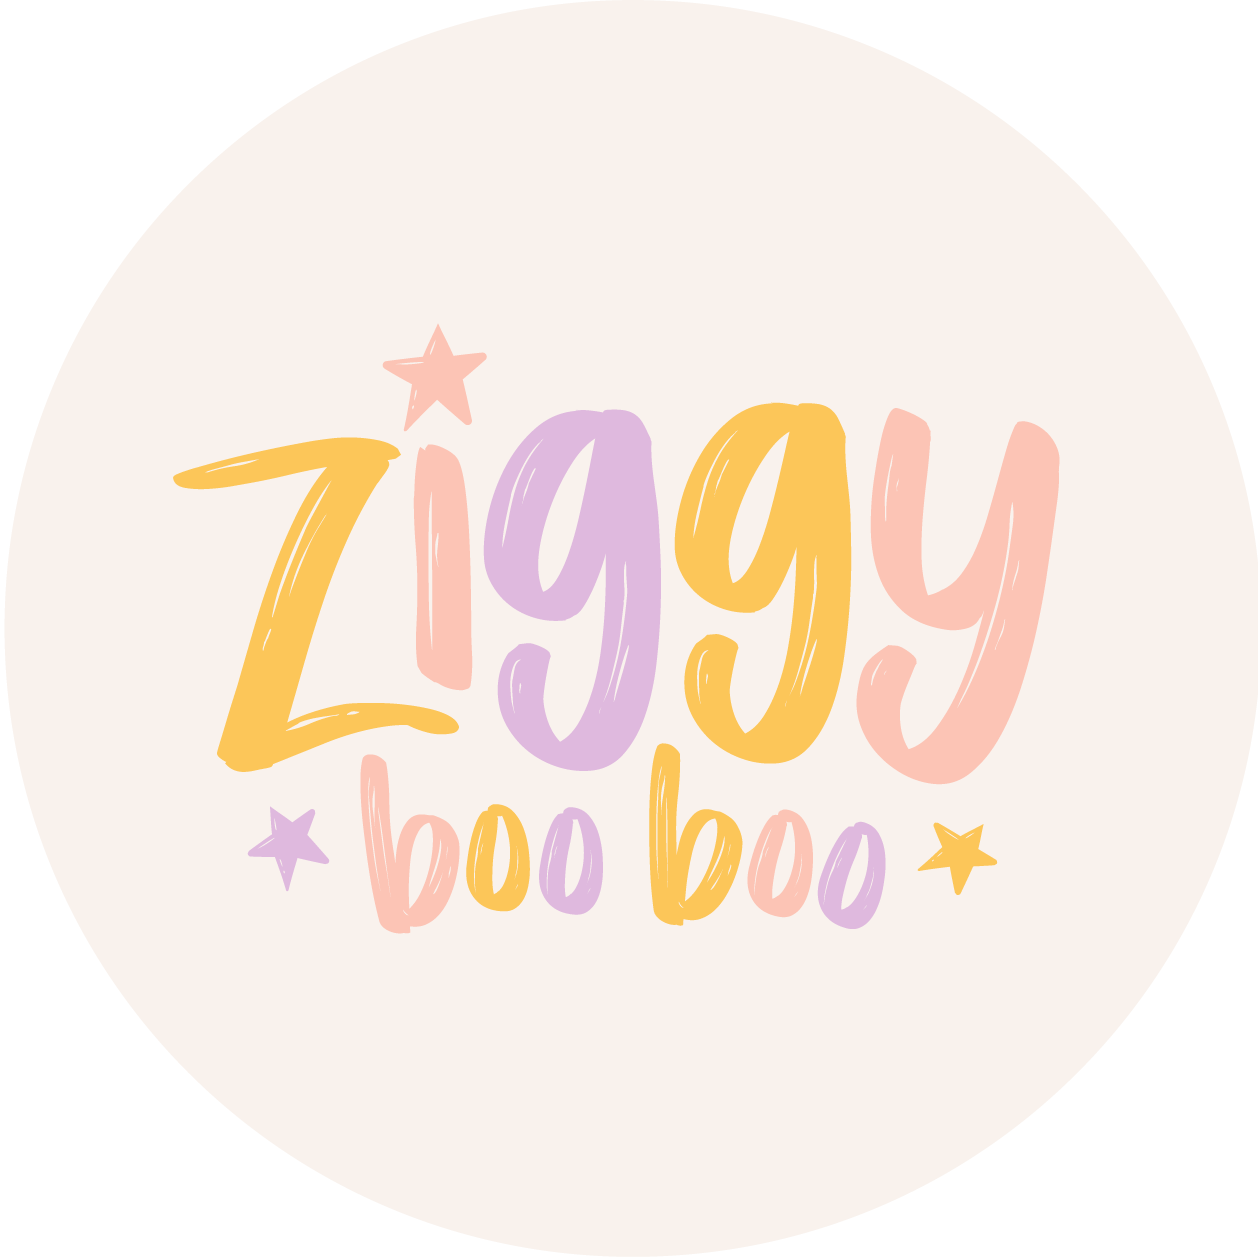 Ziggy boo boo